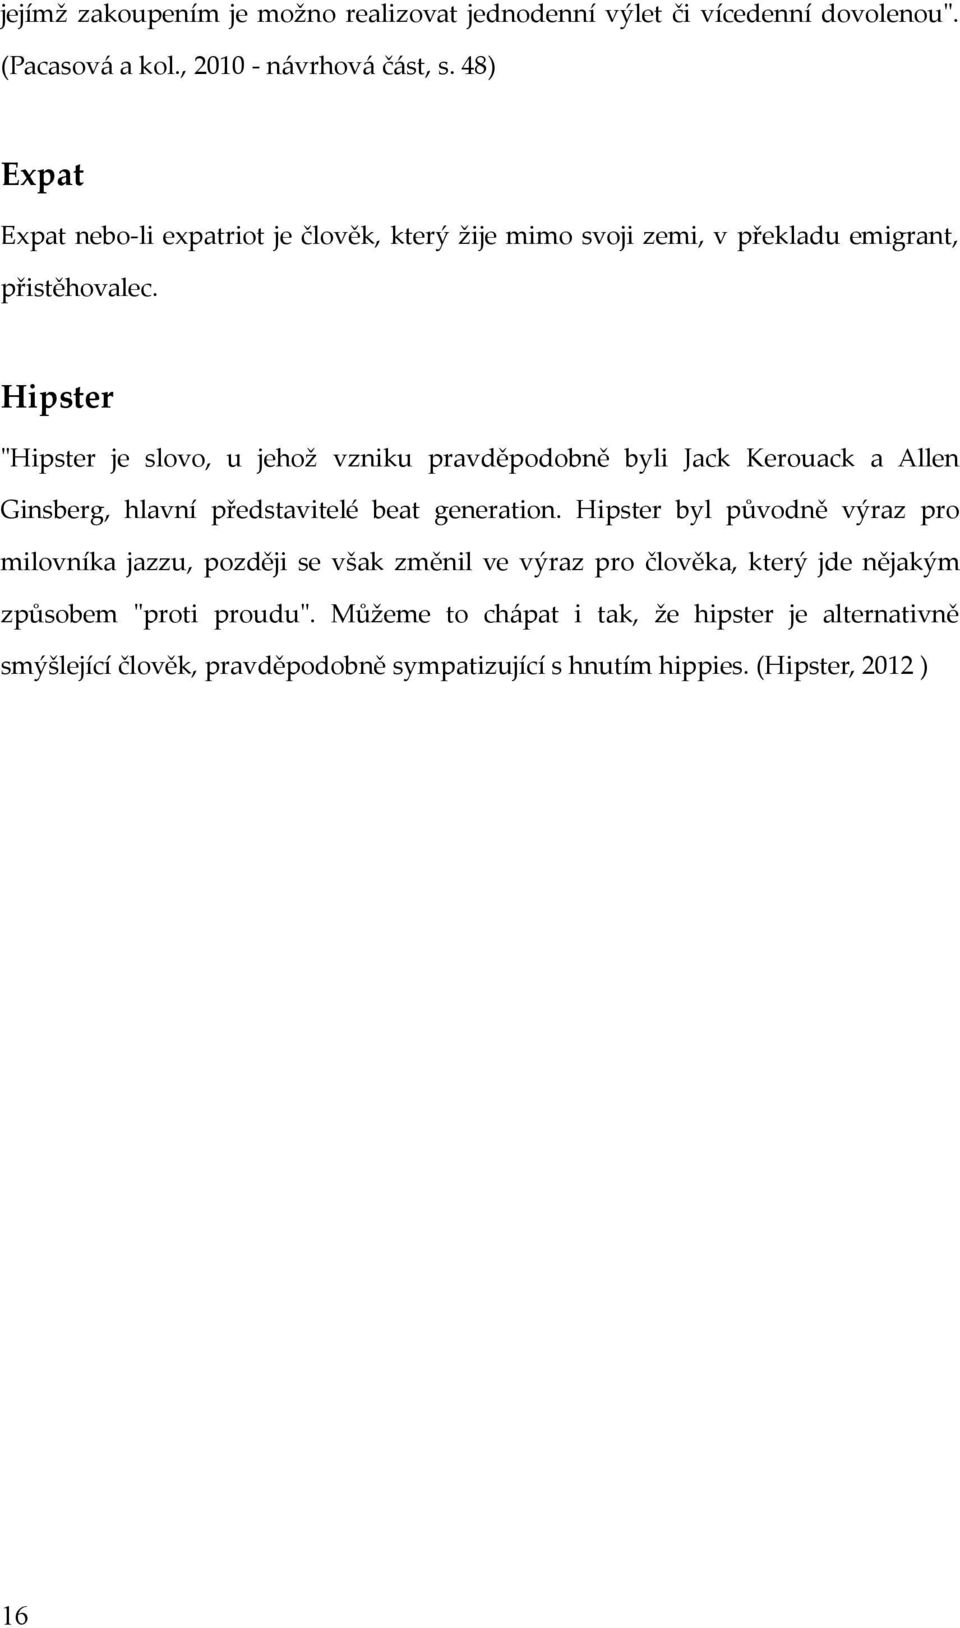 Hipster "Hipster je slovo, u jehož vzniku pravděpodobně byli Jack Kerouack a Allen Ginsberg, hlavní představitelé beat generation.